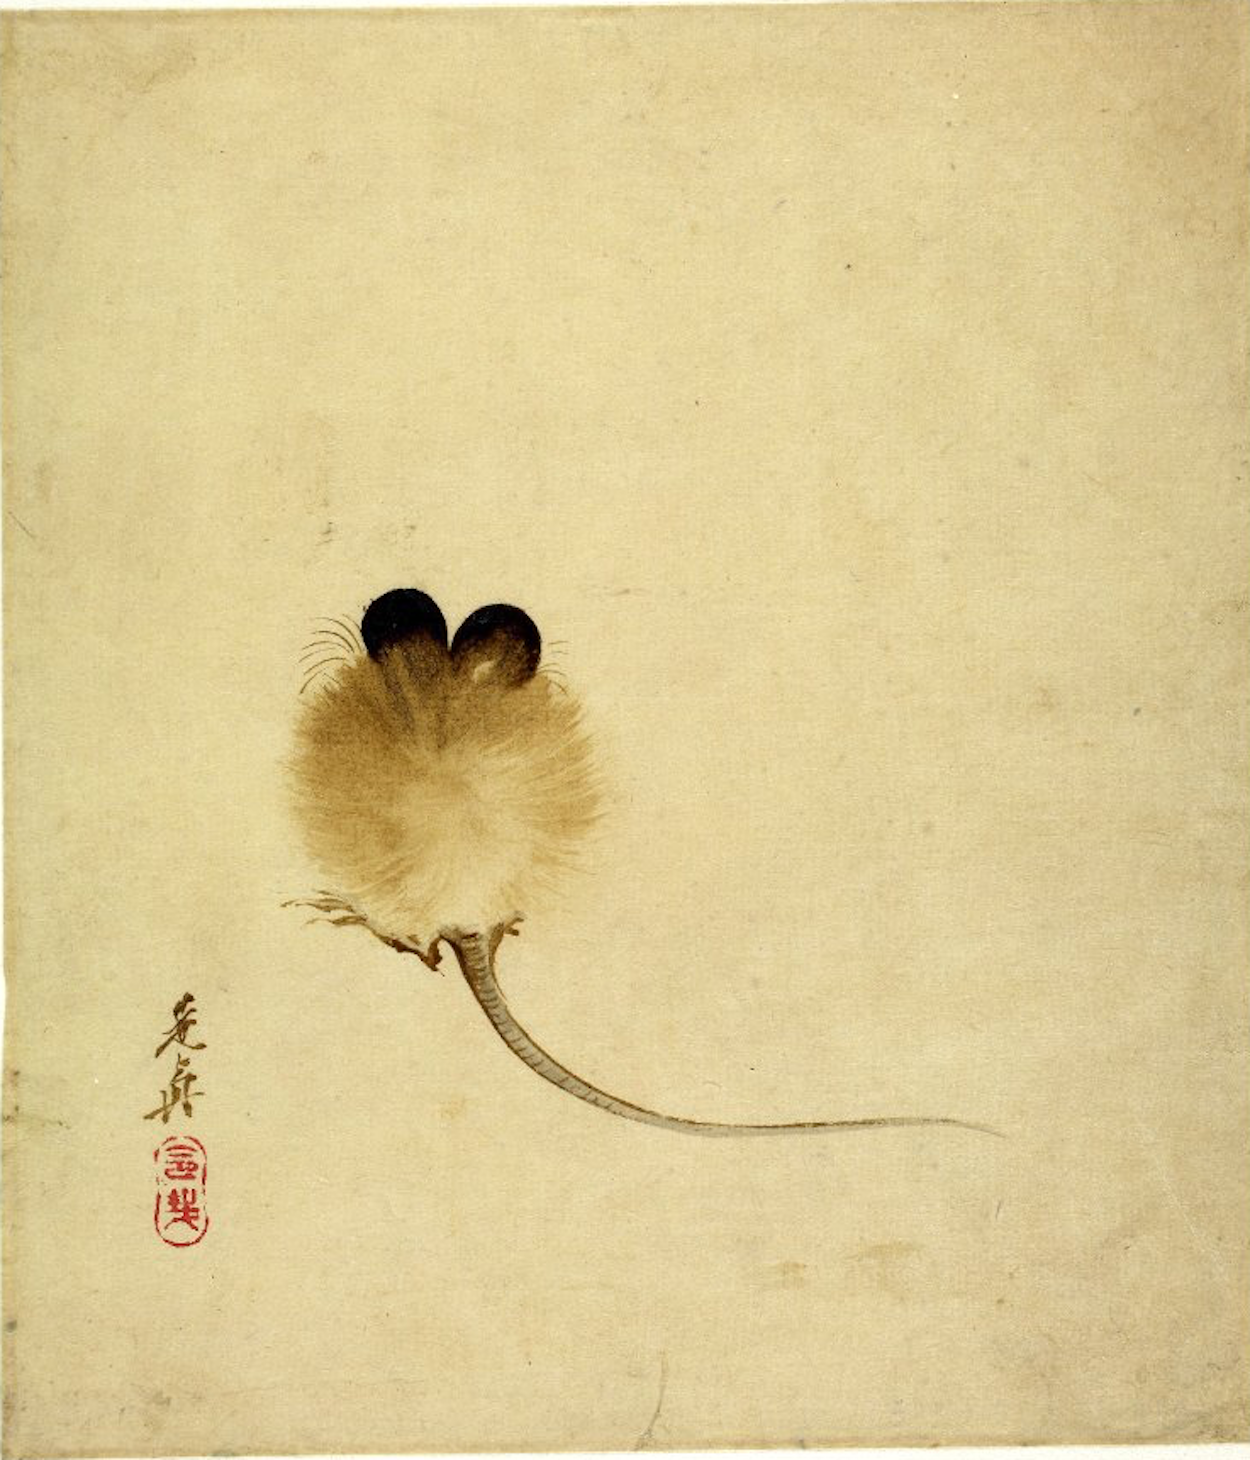 鼠 by Shibata Zeshin - 19世紀 - 19.4 x 16.8 cm 